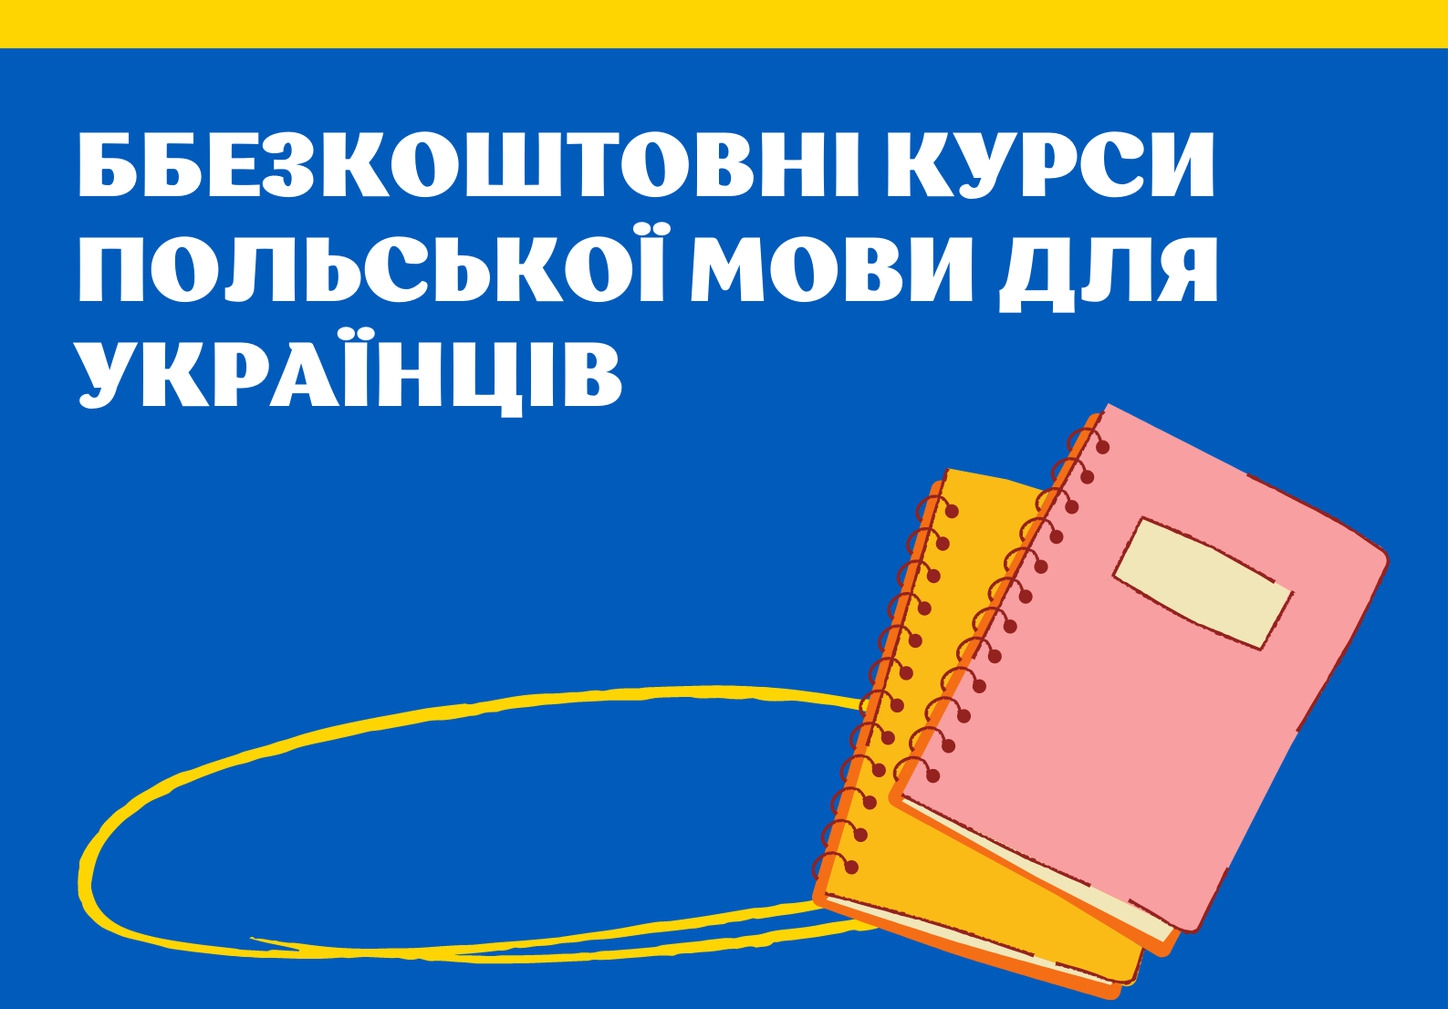 Bezpłatne kursy językowe dla Ukraińców